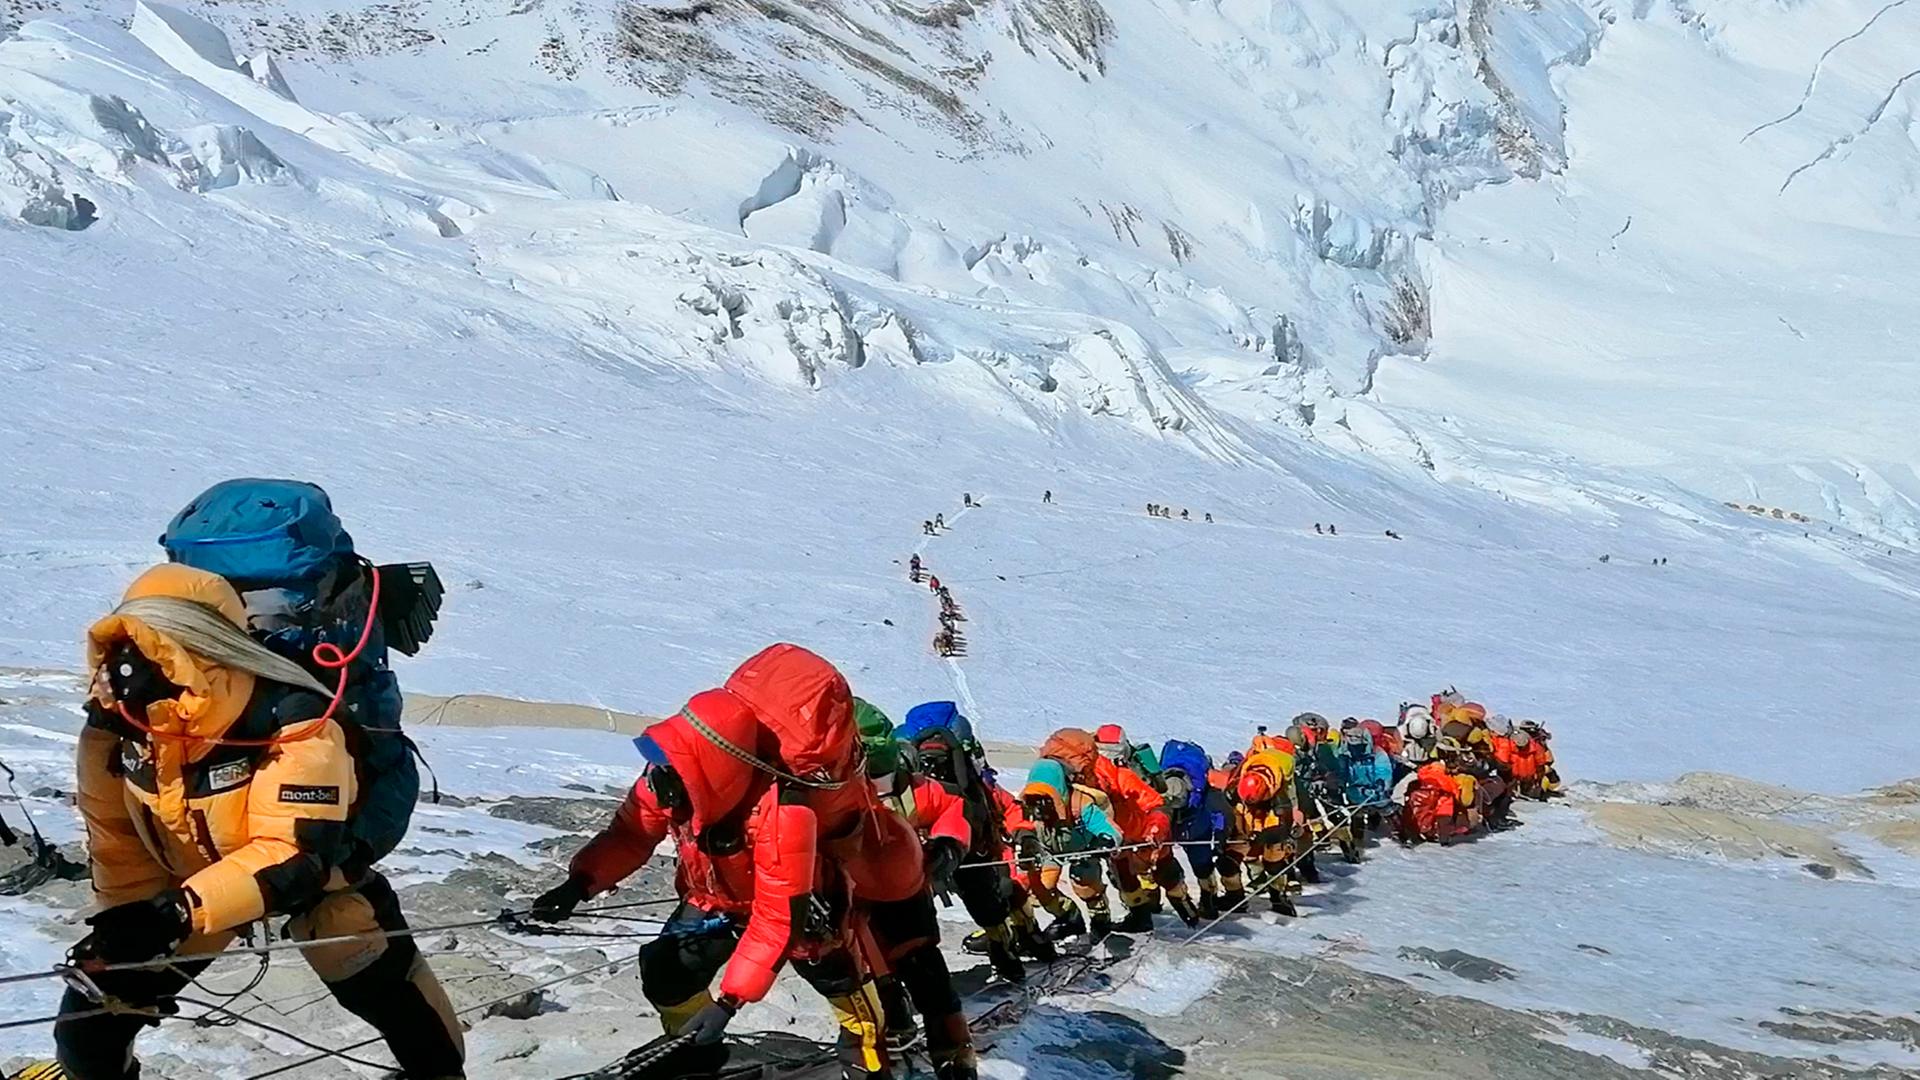  In einer langer Schlange klettern Bergsteiger auf den Mount Everest.